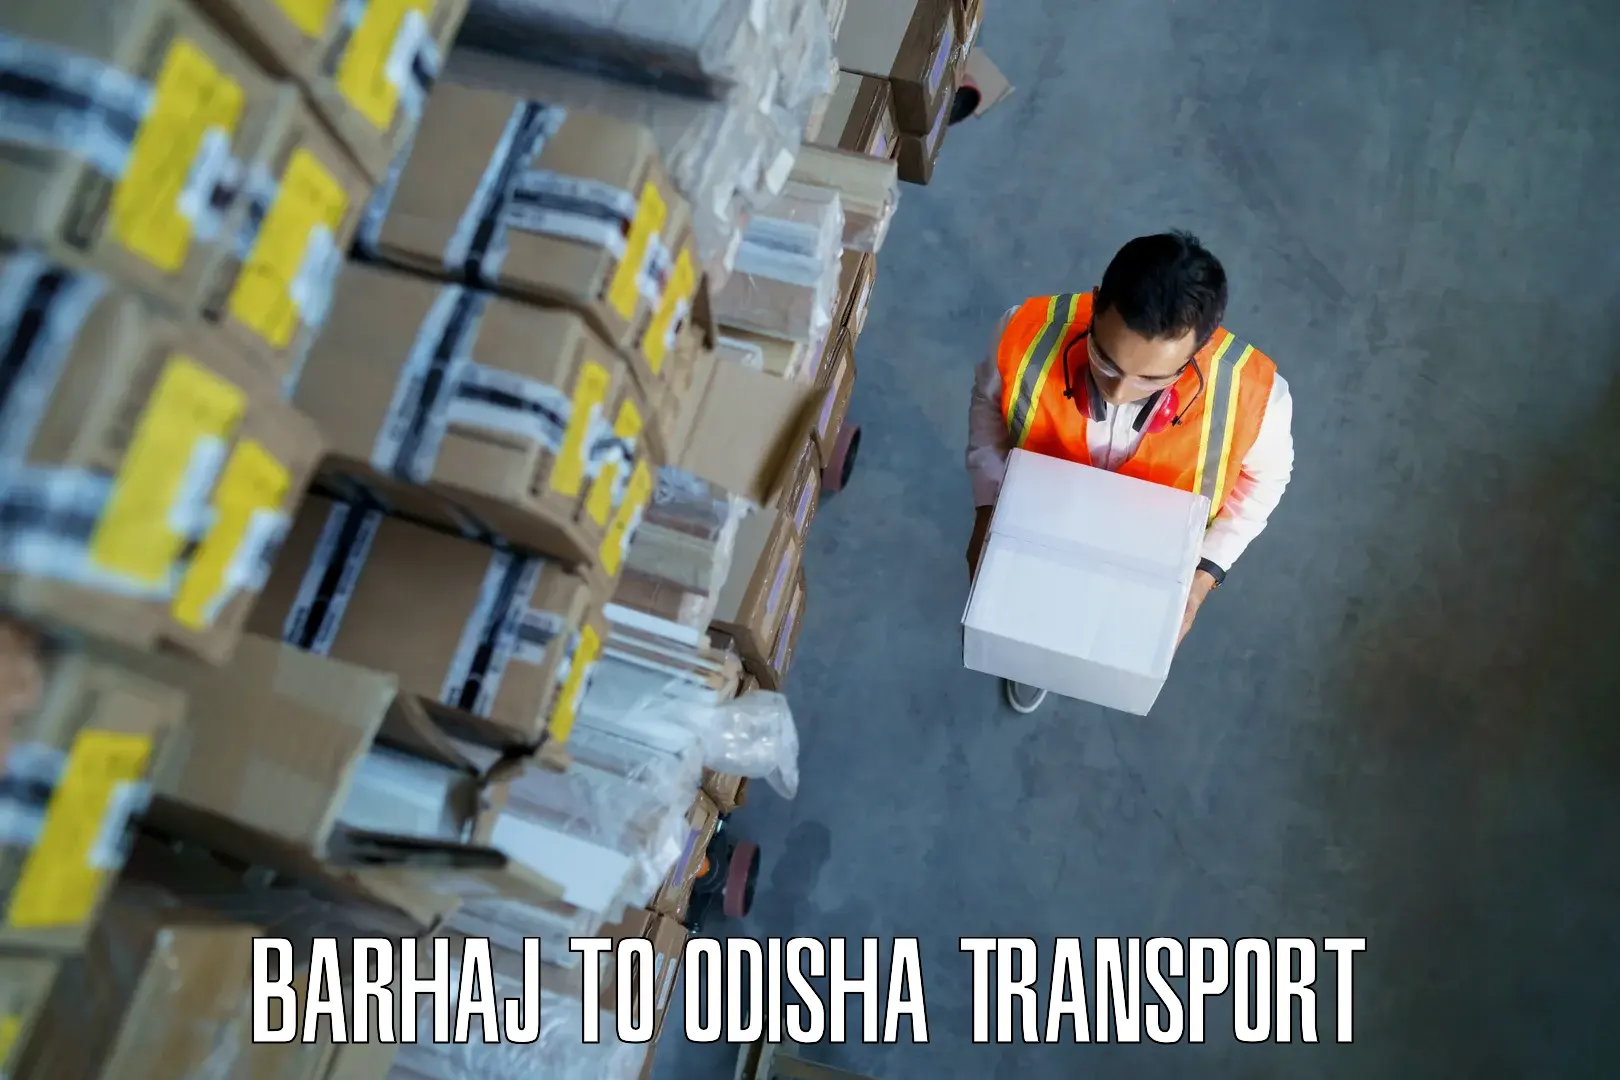 Shipping partner Barhaj to Sambalpur